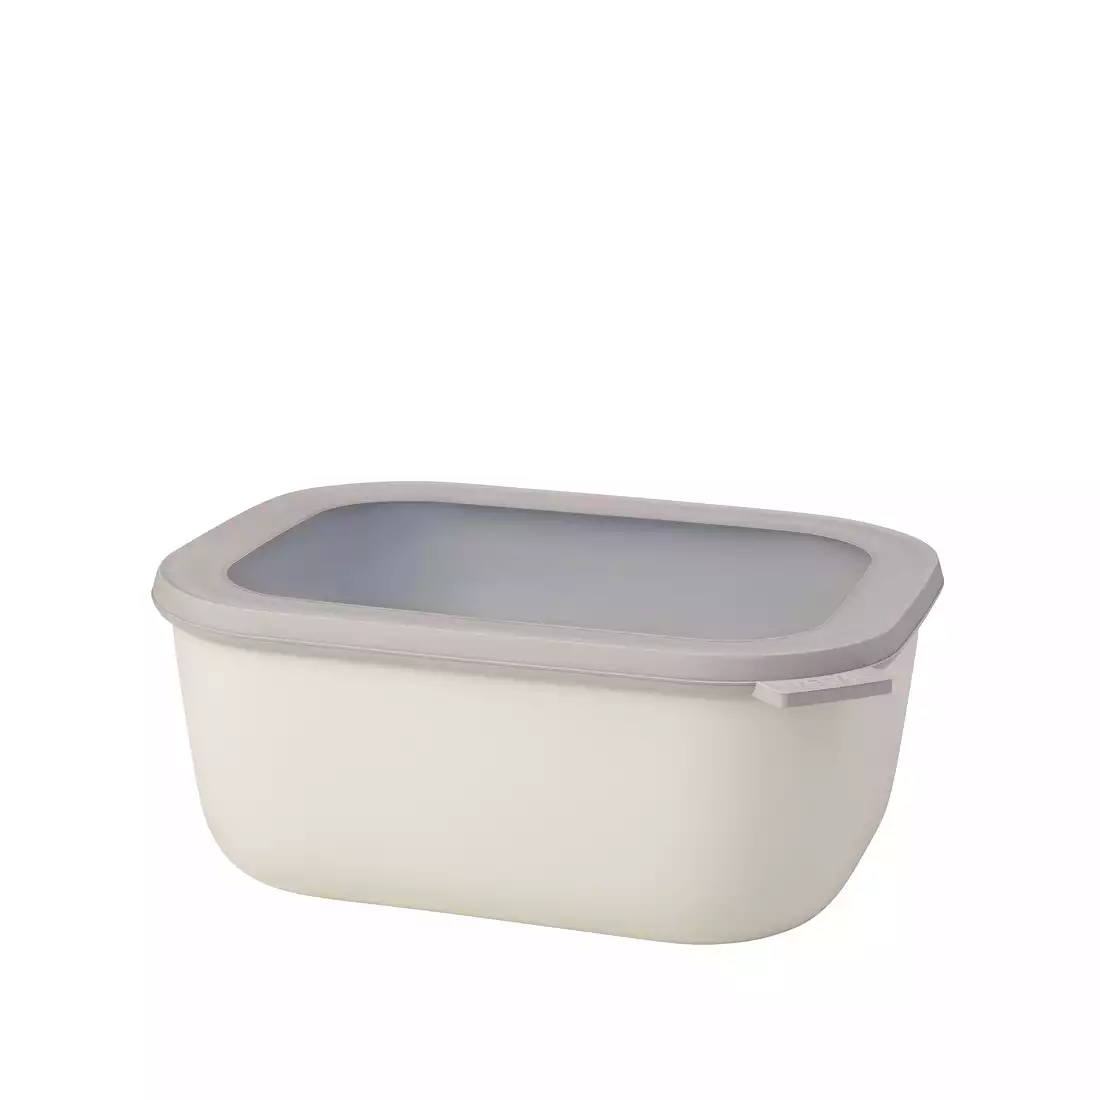 MEPAL CIRQULA rectangular bowl 3000 ml, nordic white